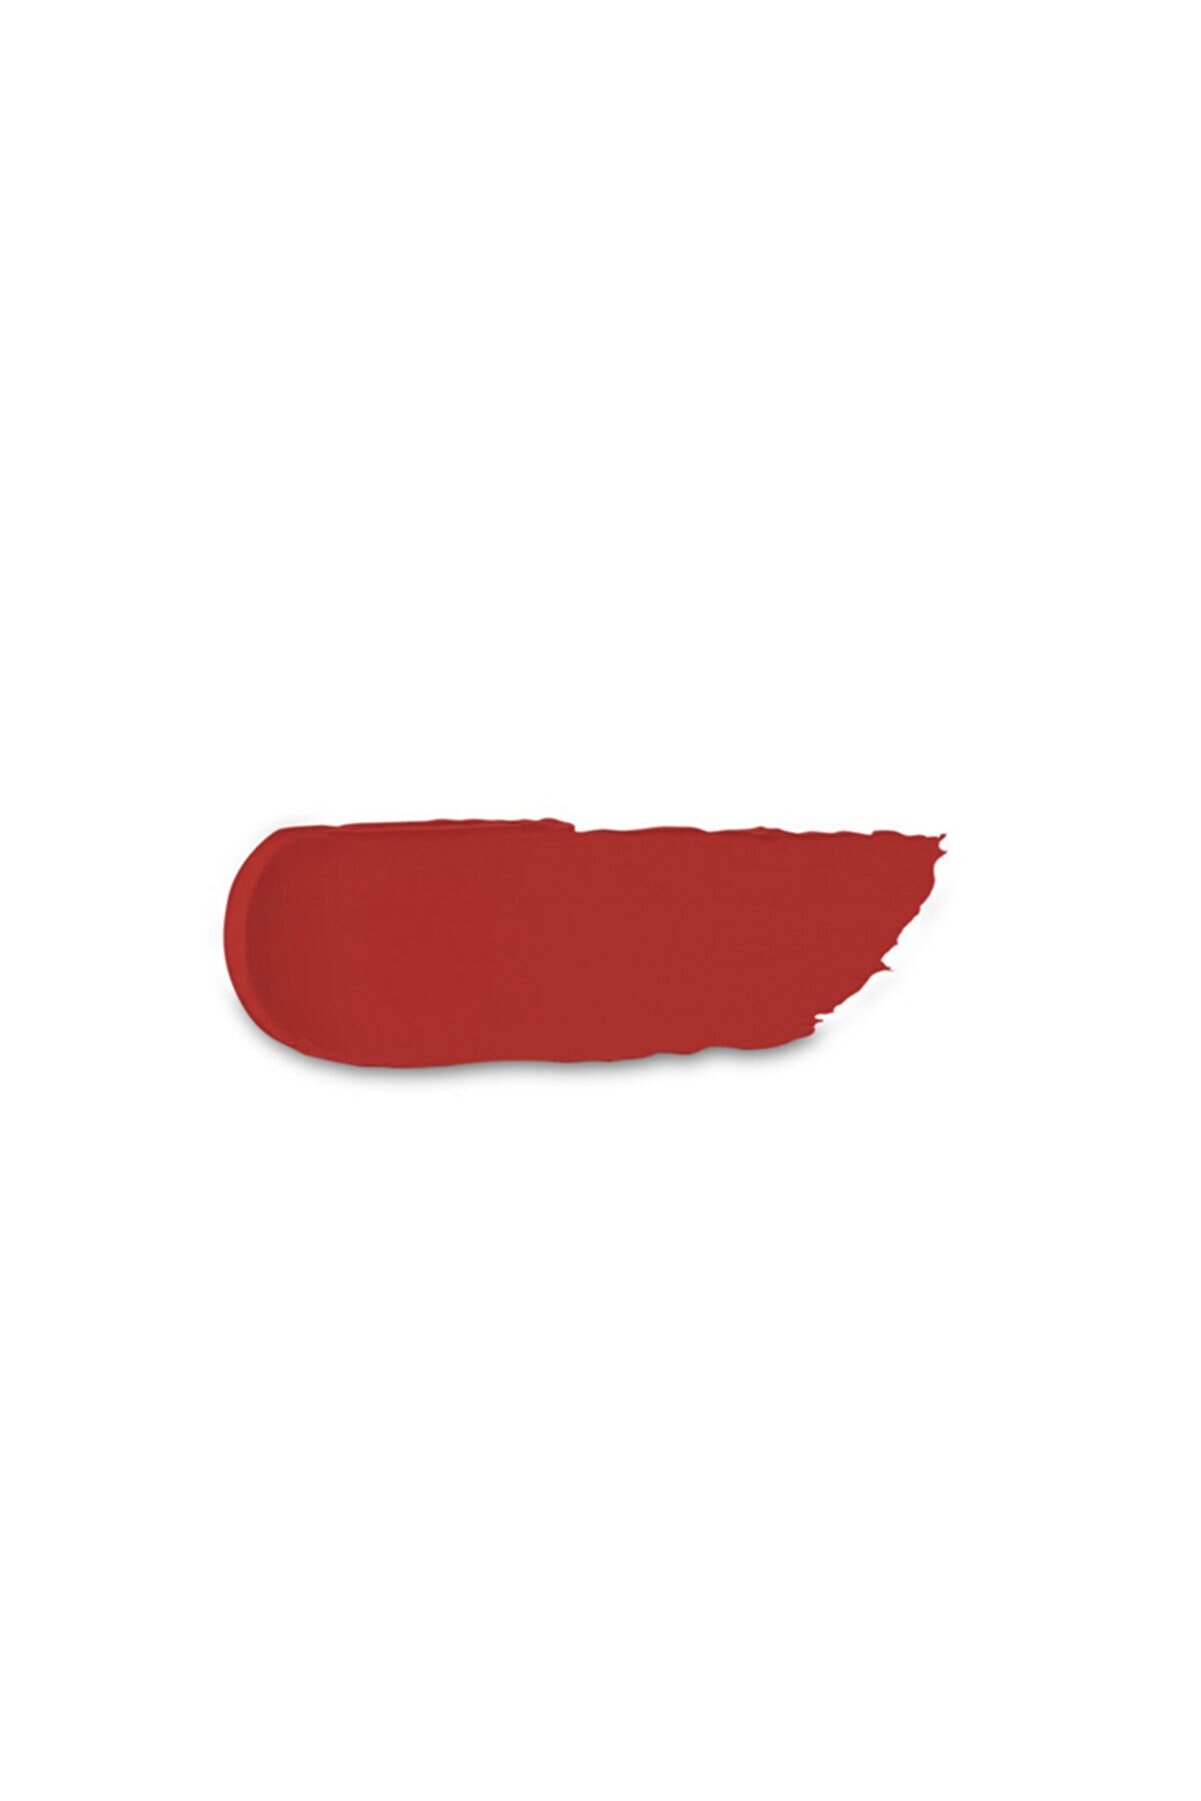 رژ لب جامد مات مدل Powder Power رنگ Indian red شماره 02 کیکو KIKO شیکولات